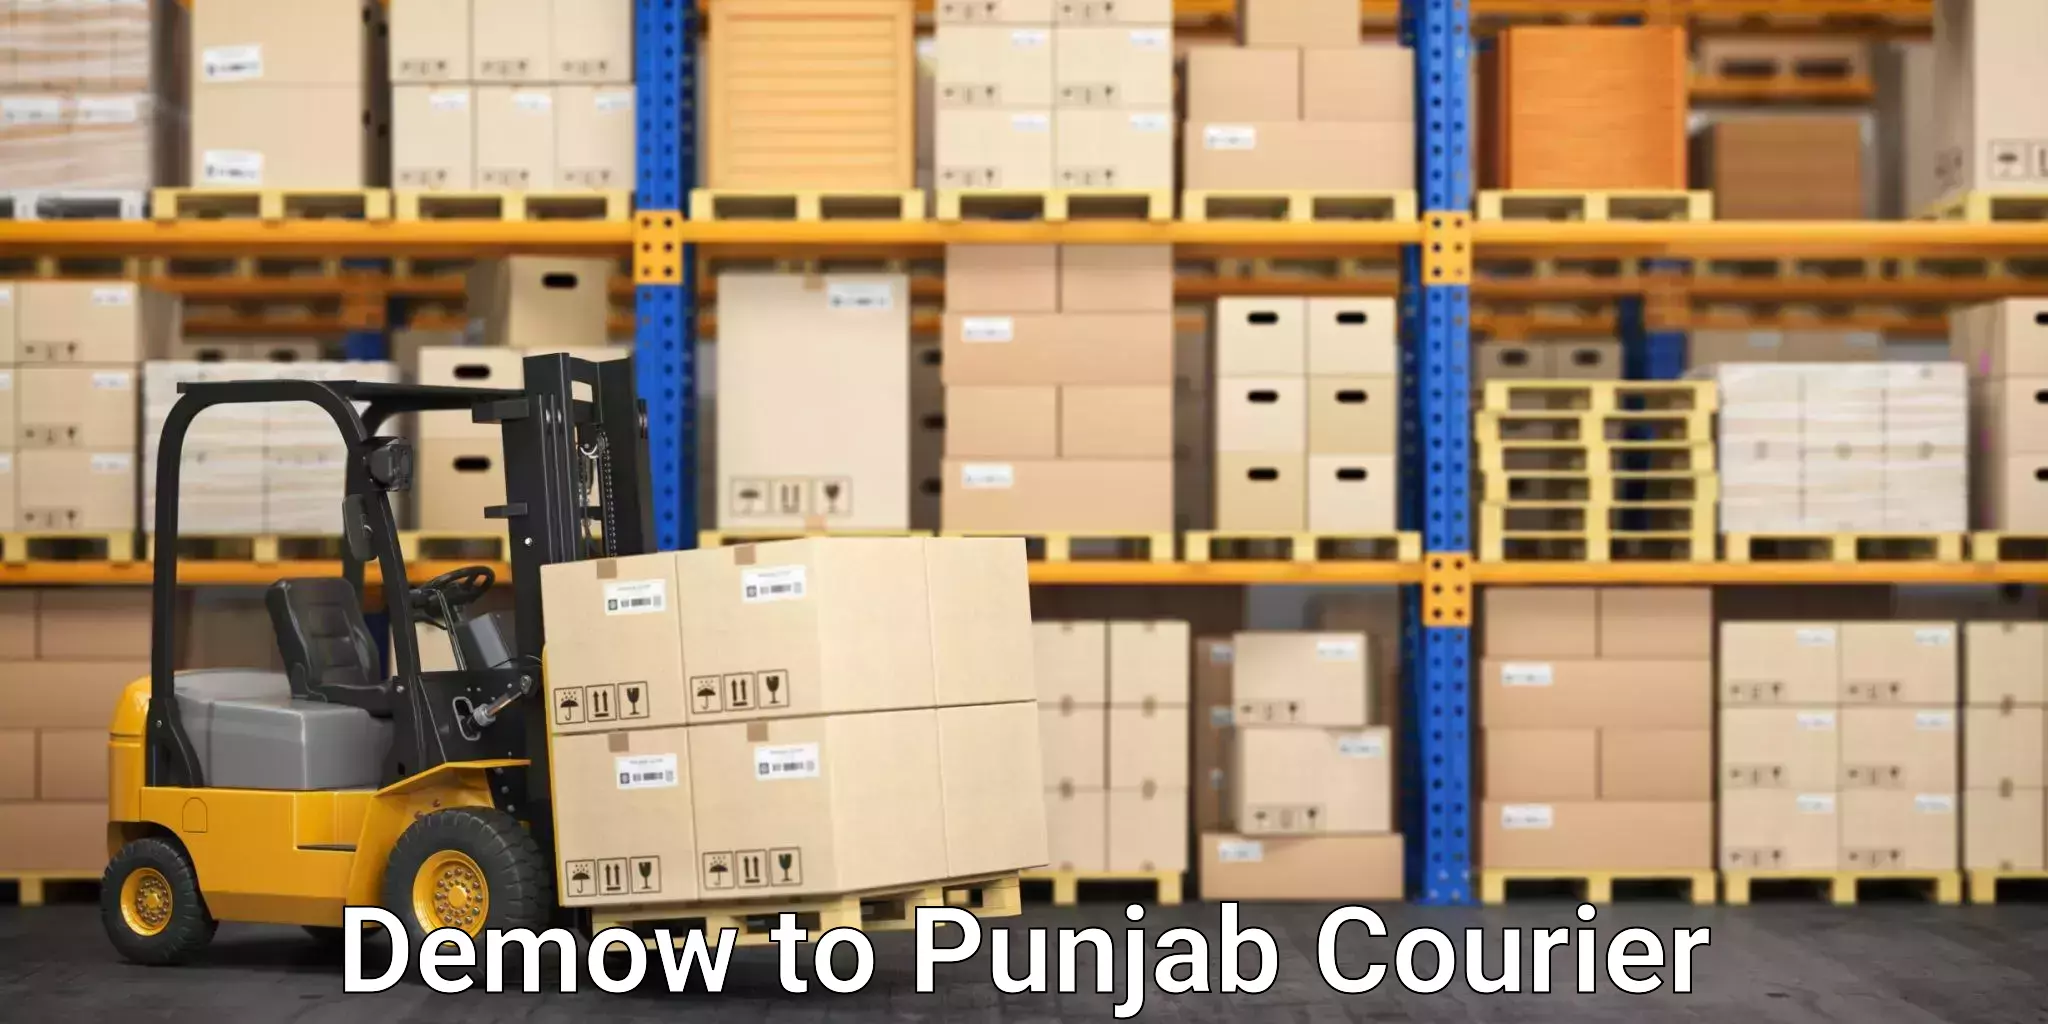 Efficient parcel service Demow to Punjab